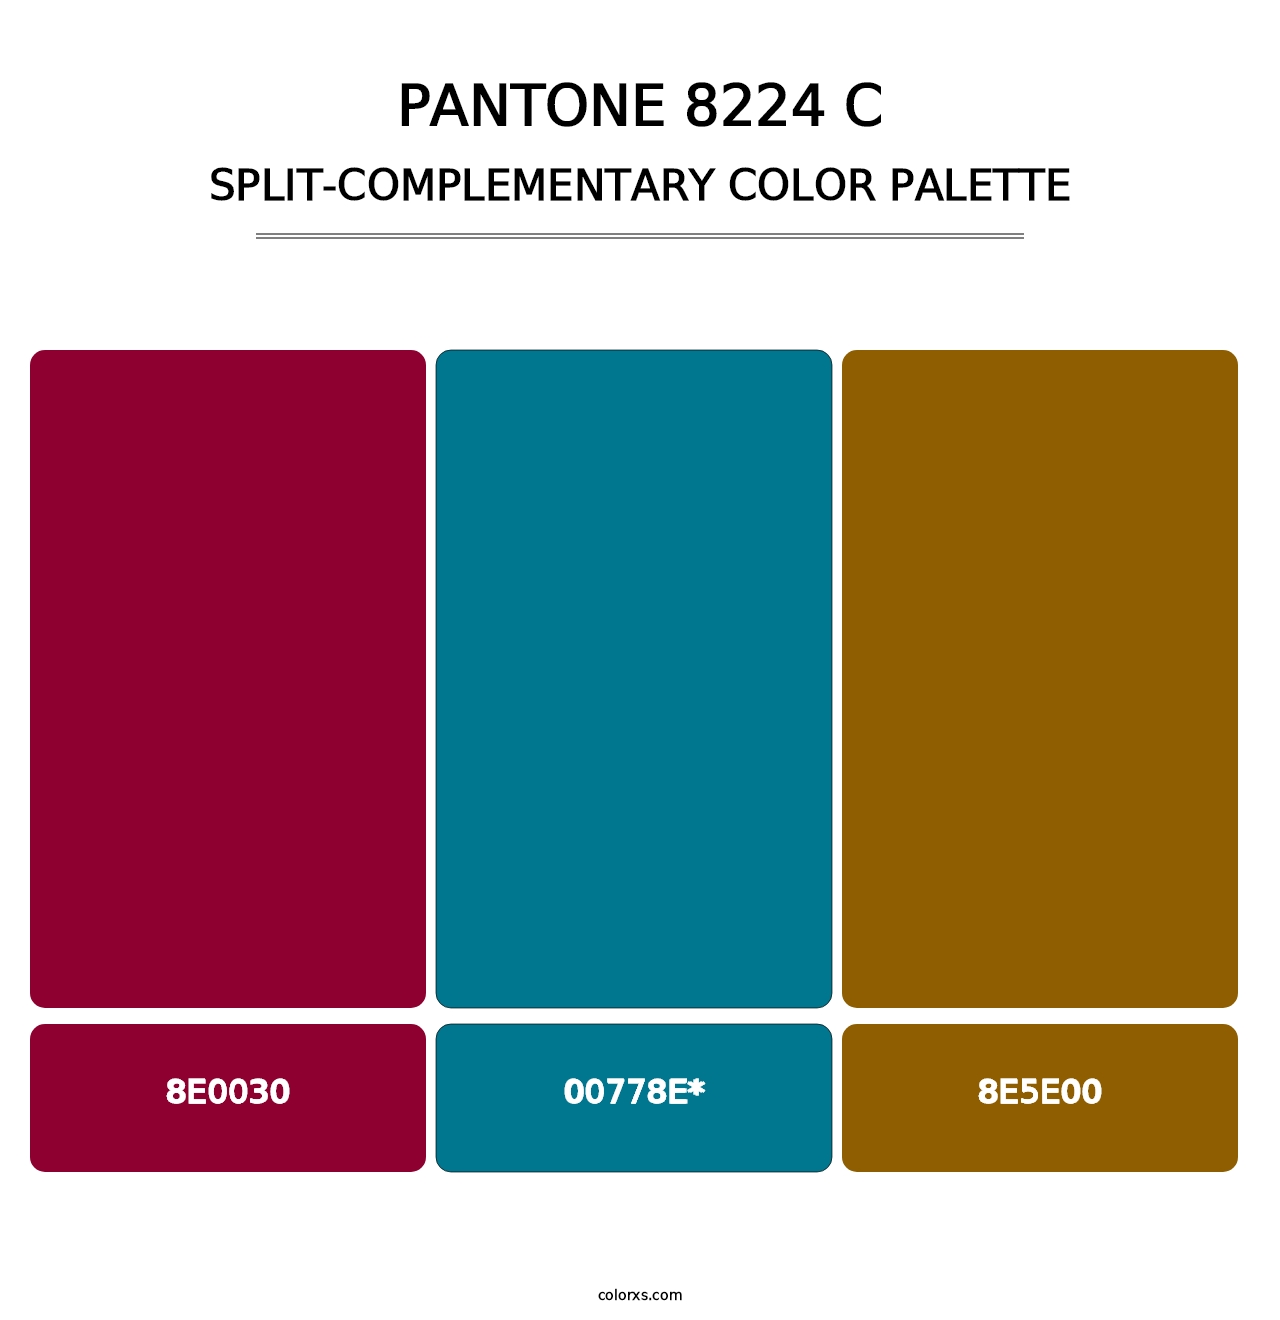 PANTONE 8224 C - Split-Complementary Color Palette